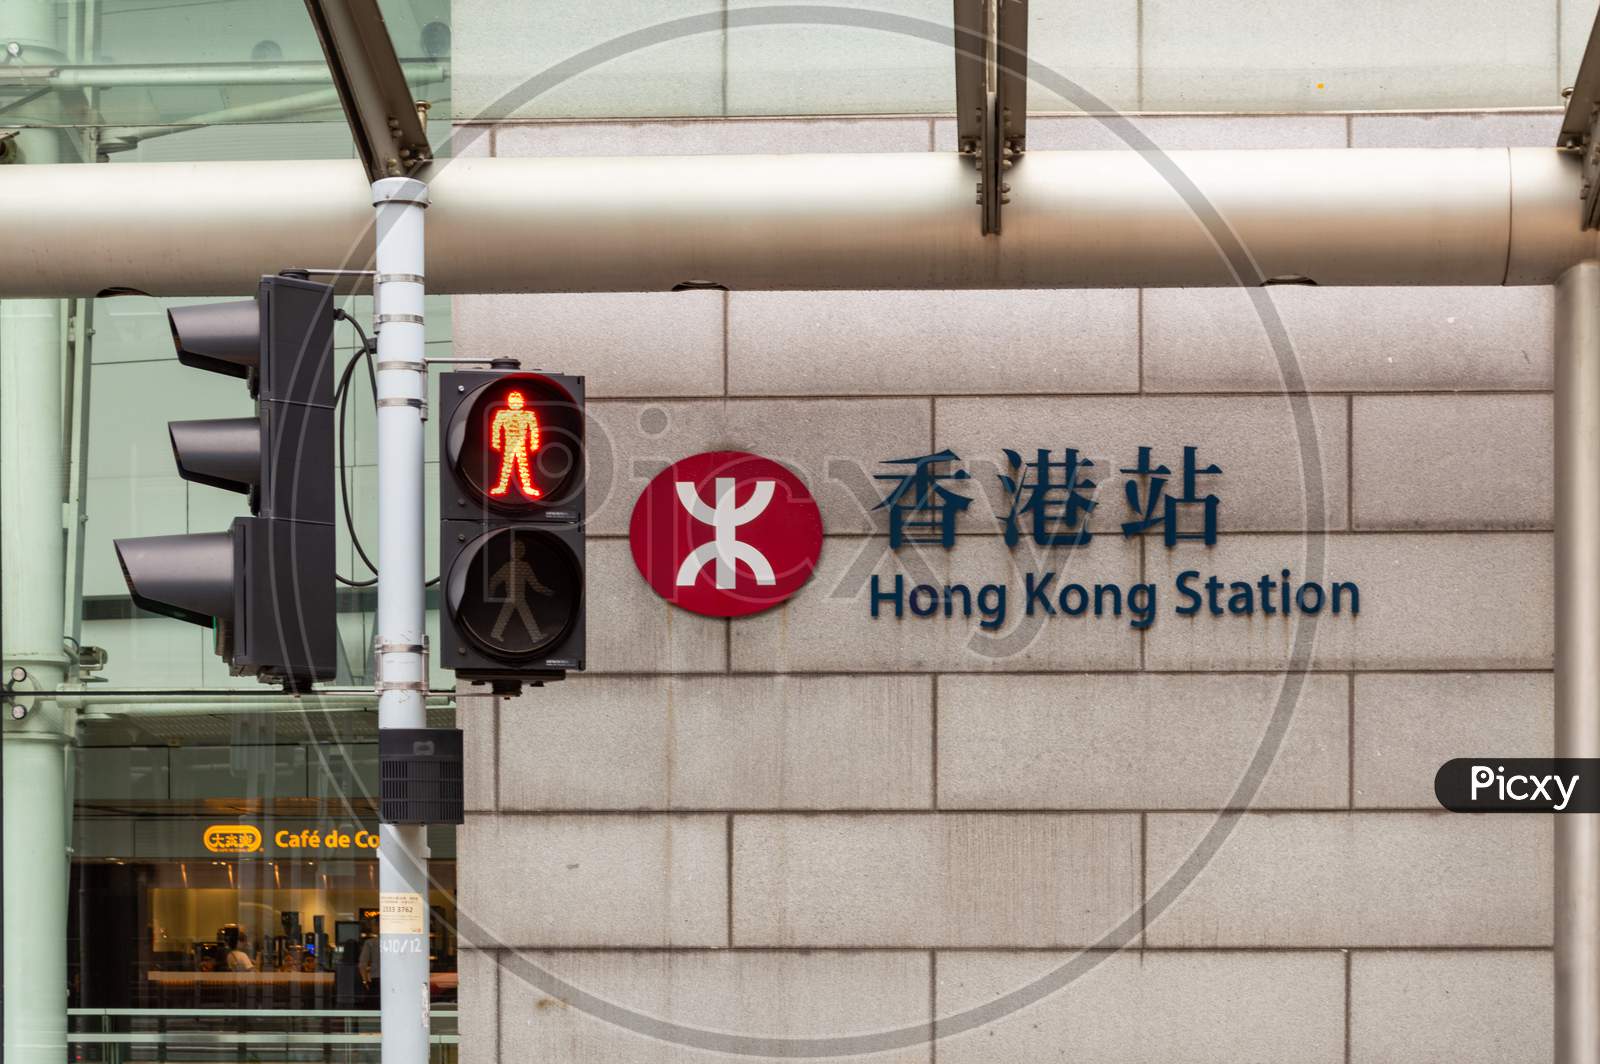 Hong Kong Station Of The Mtr Metro System In Hong Kong